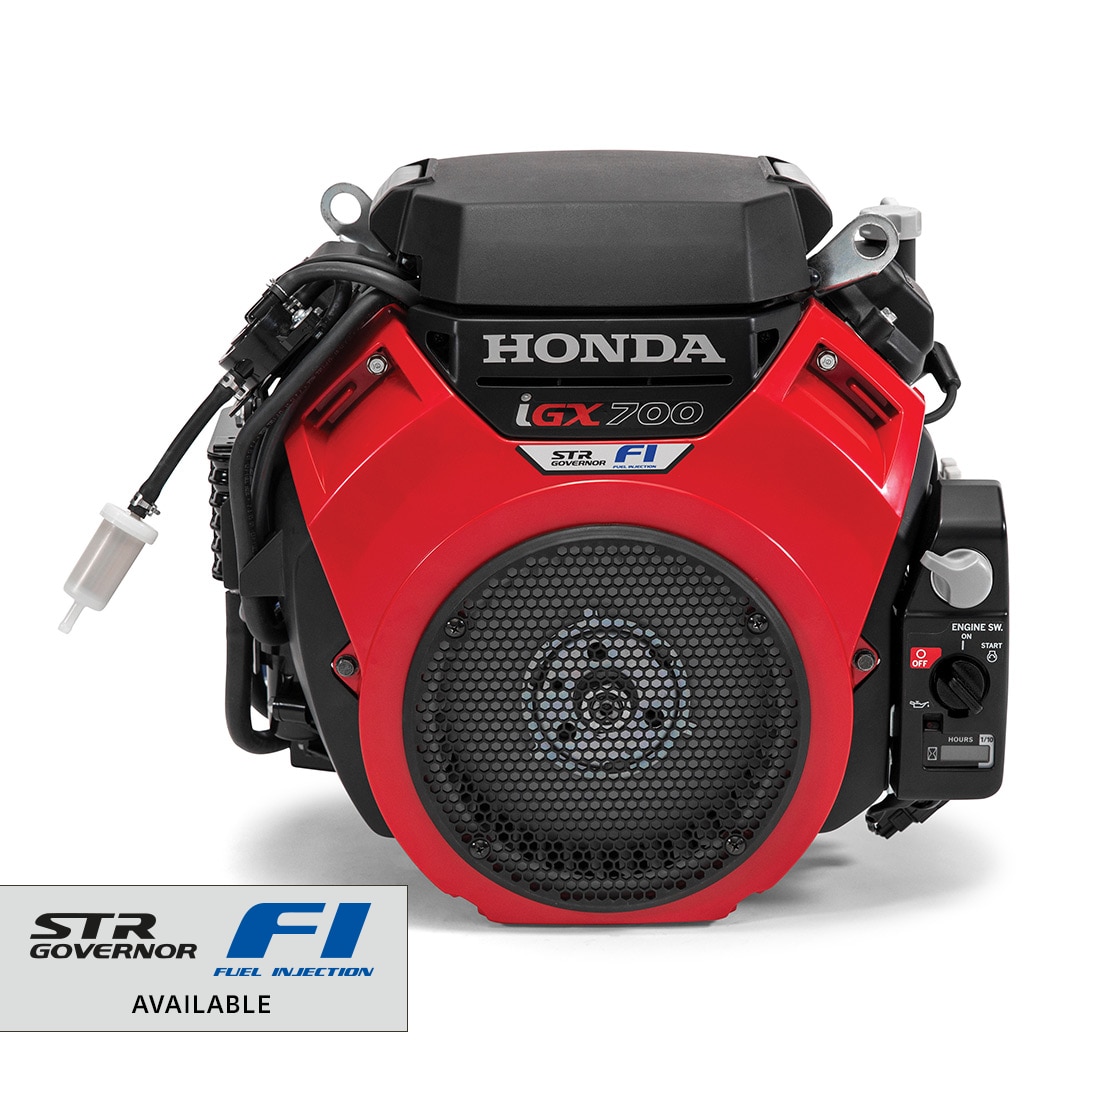 Photo of Honda iGX700 engine